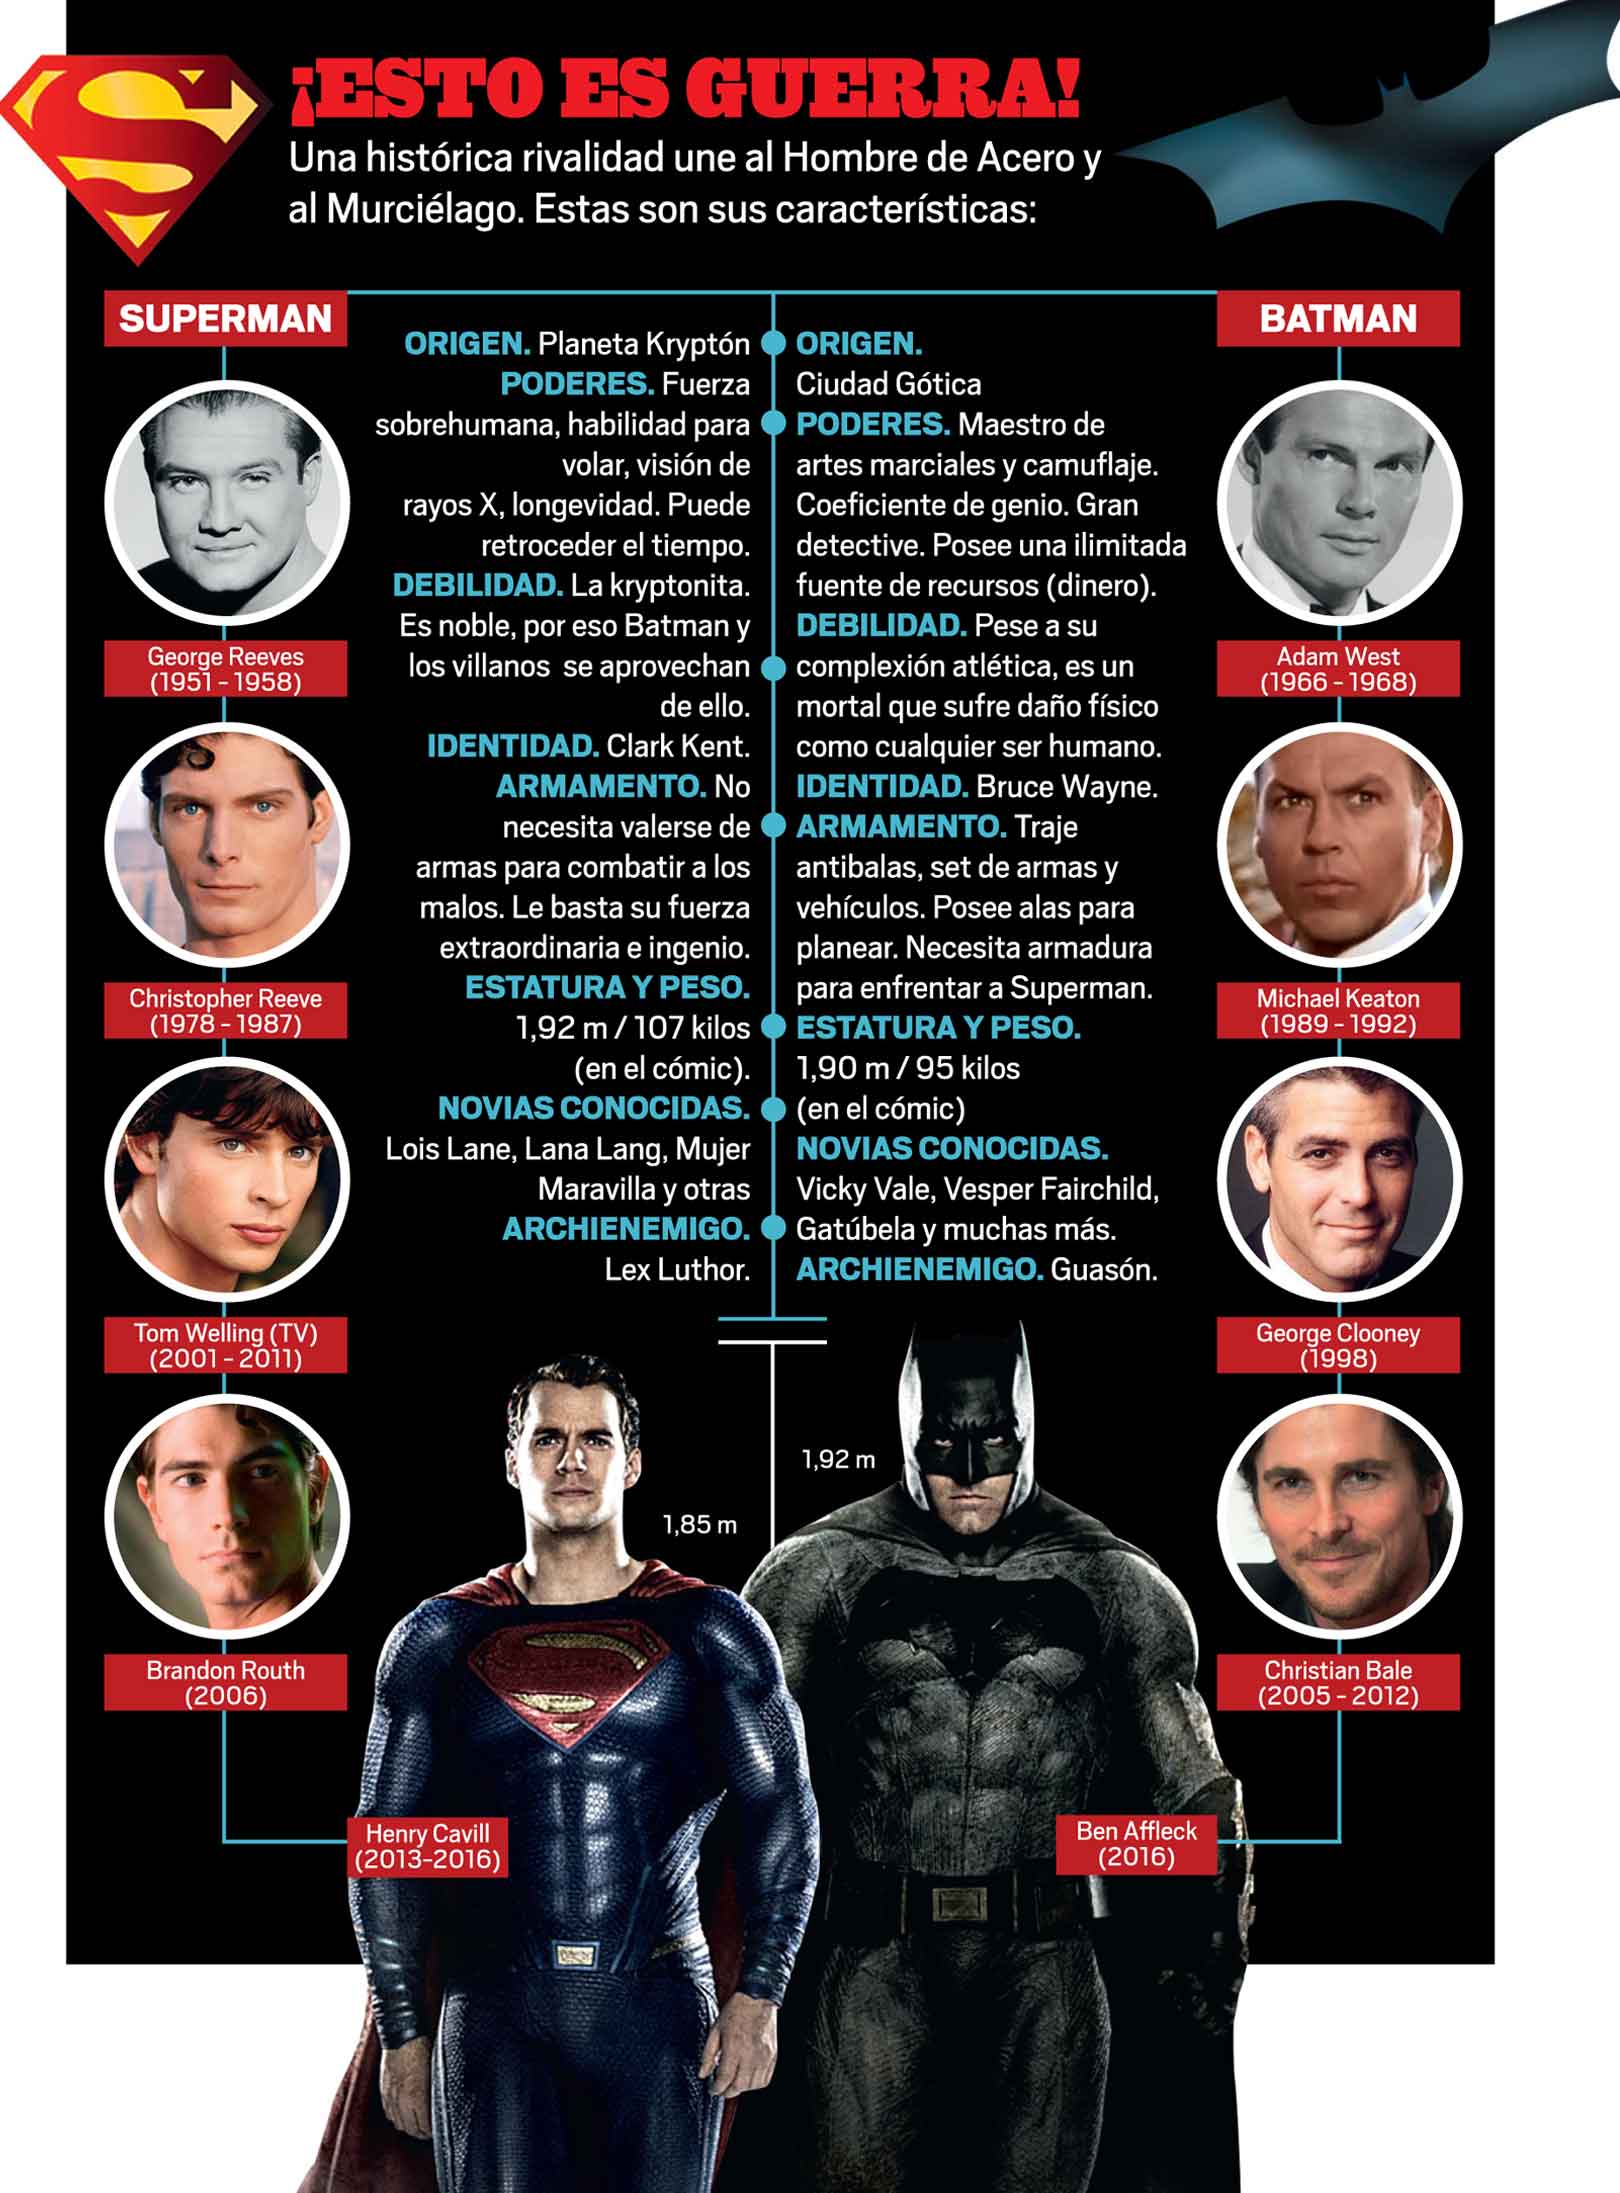 Batman vs Superman, historia de una rivalidad | LUCES | EL COMERCIO PERÚ